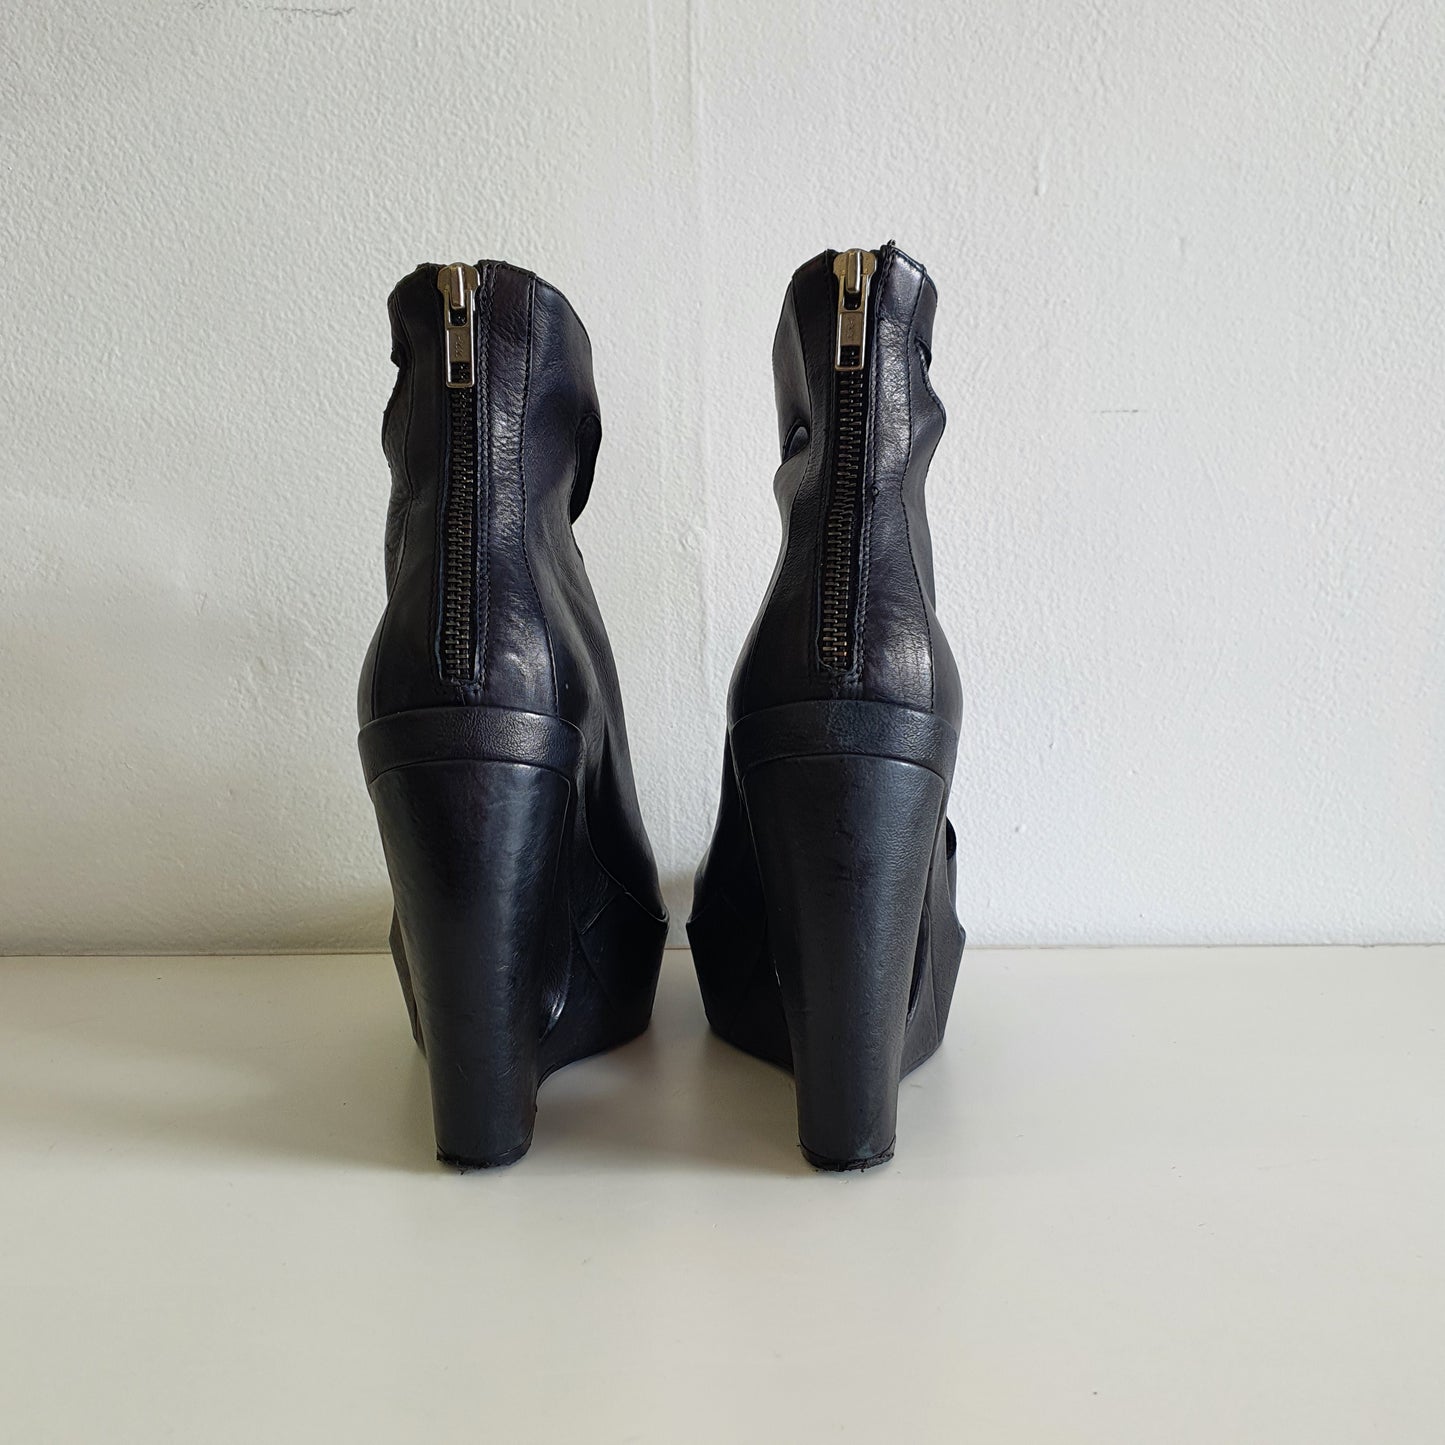 ANN DEMEULEMEESTER Cut-Out Curved Platform Boots (EU737/ UK4 / US7)